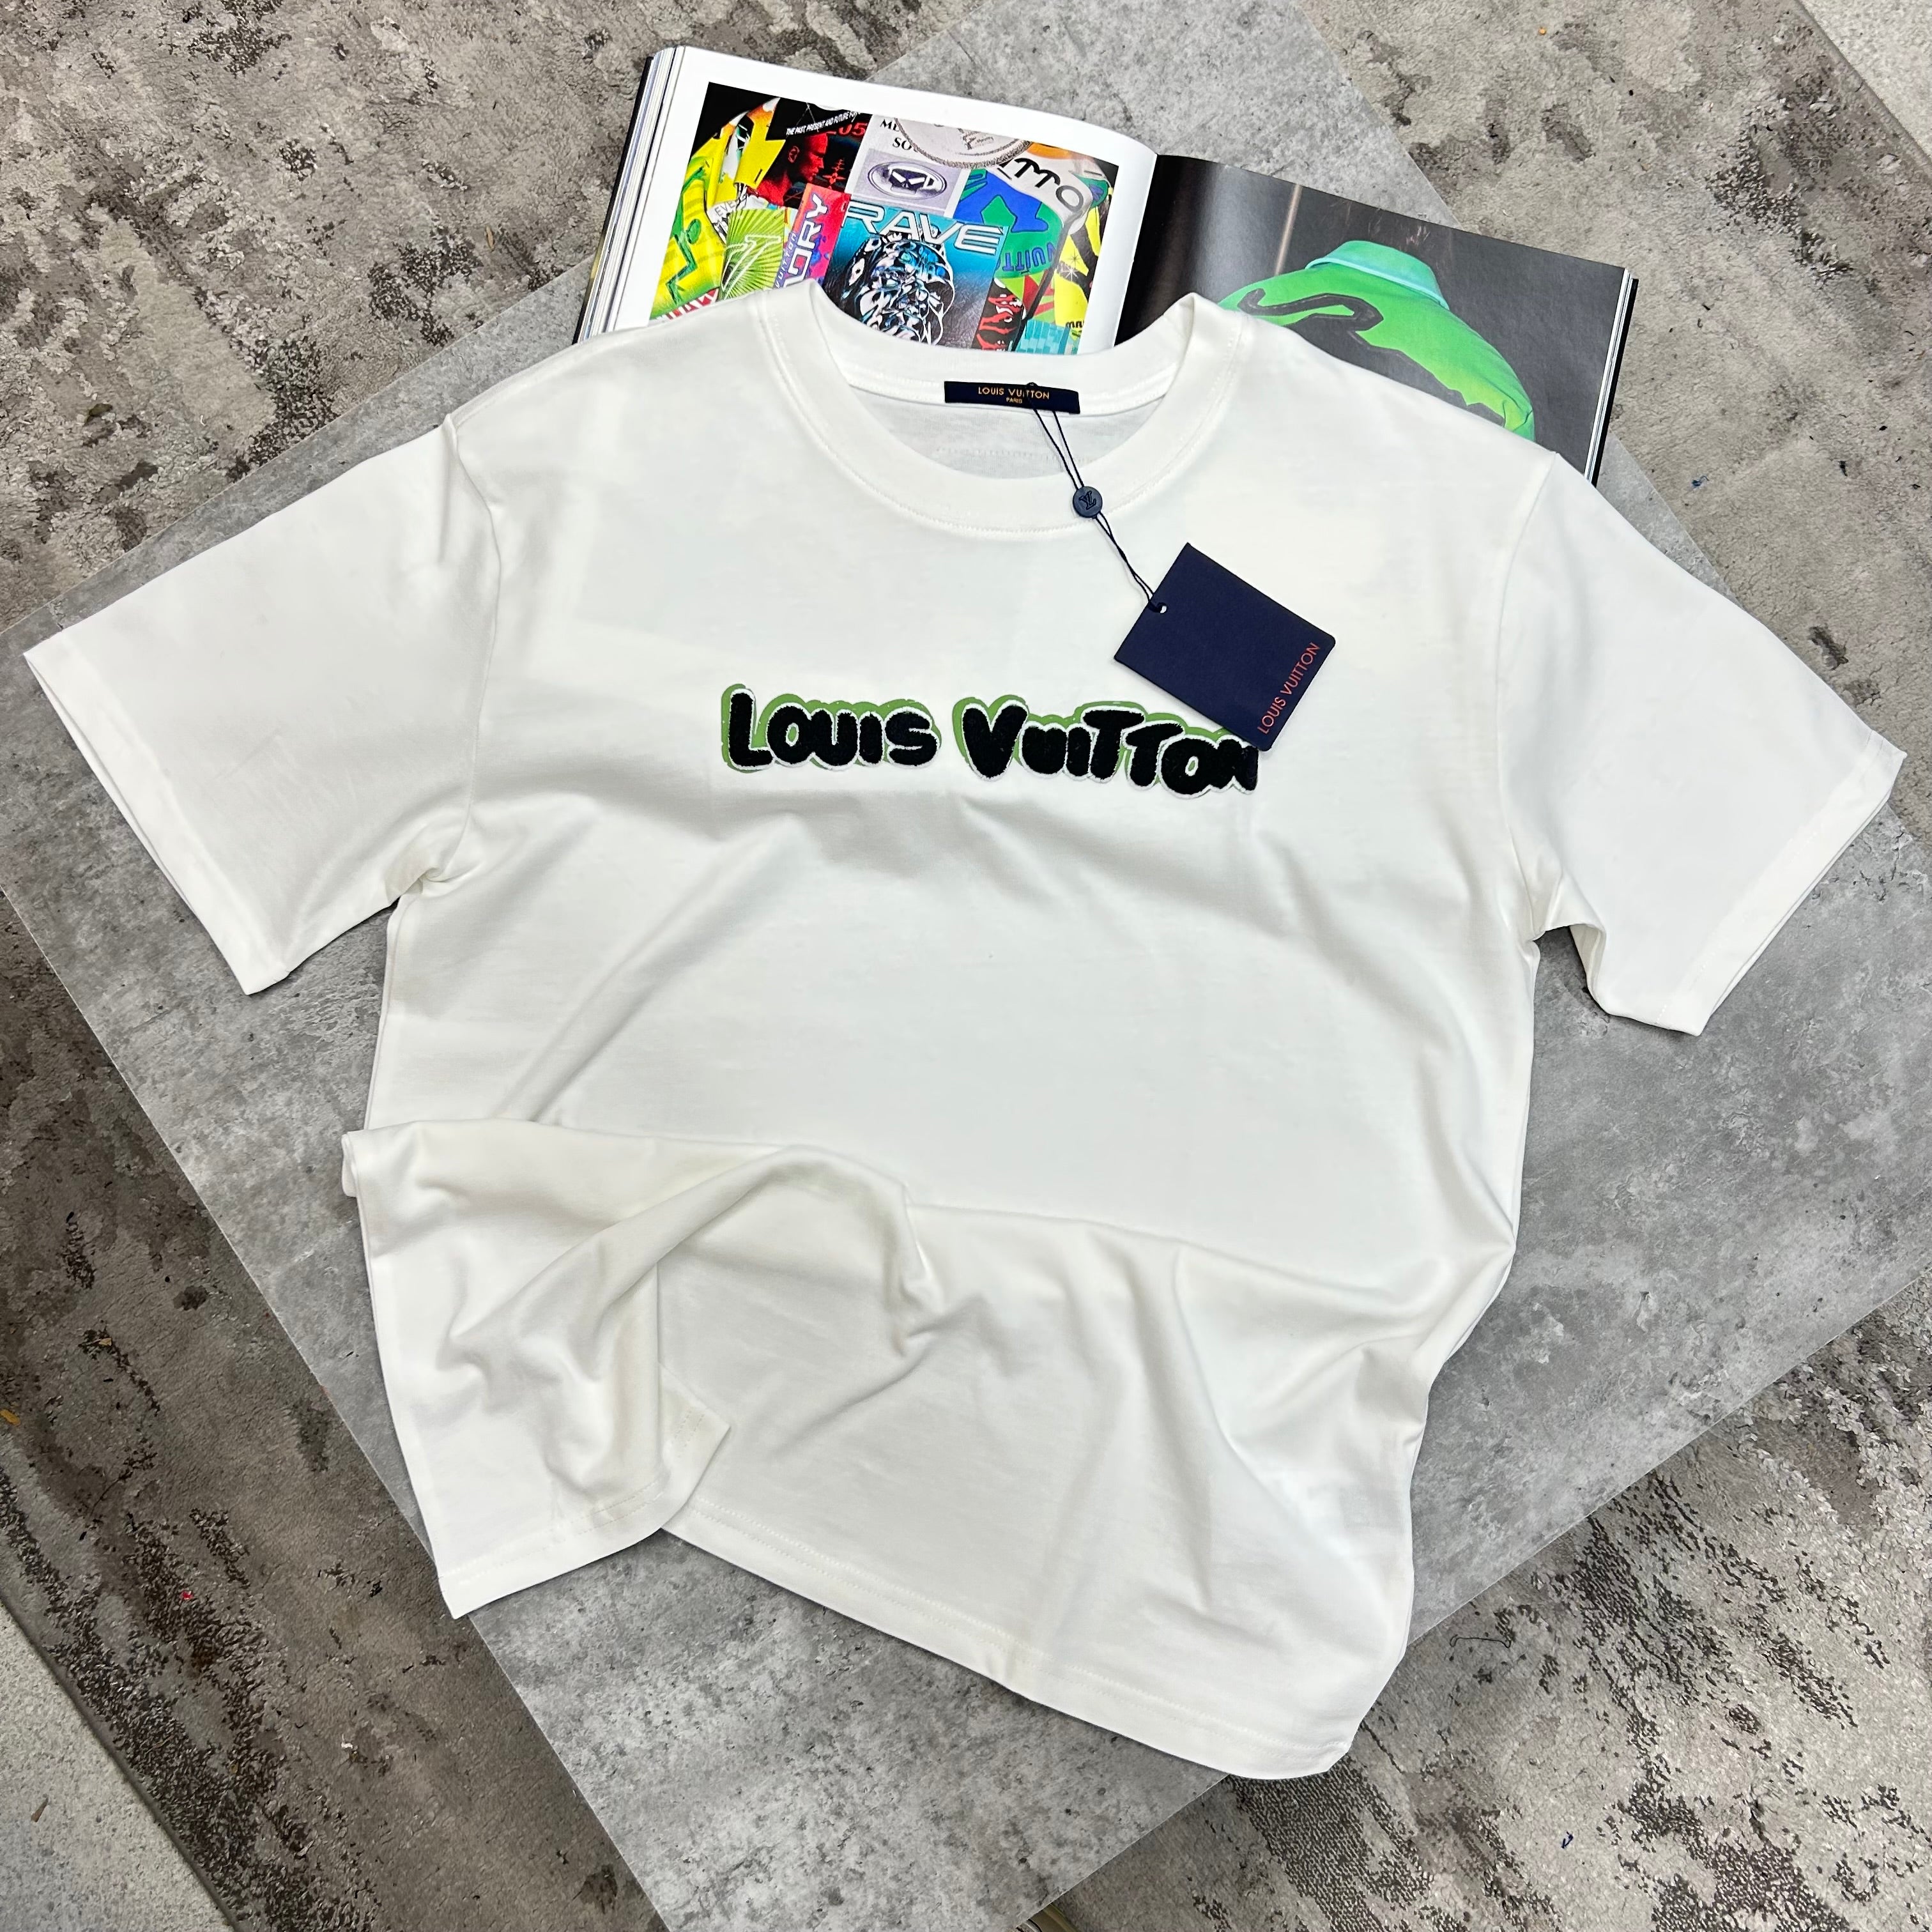 LOUIS VUITTON - BLACK/GREEN LOGO T-SHIRT - WHITE